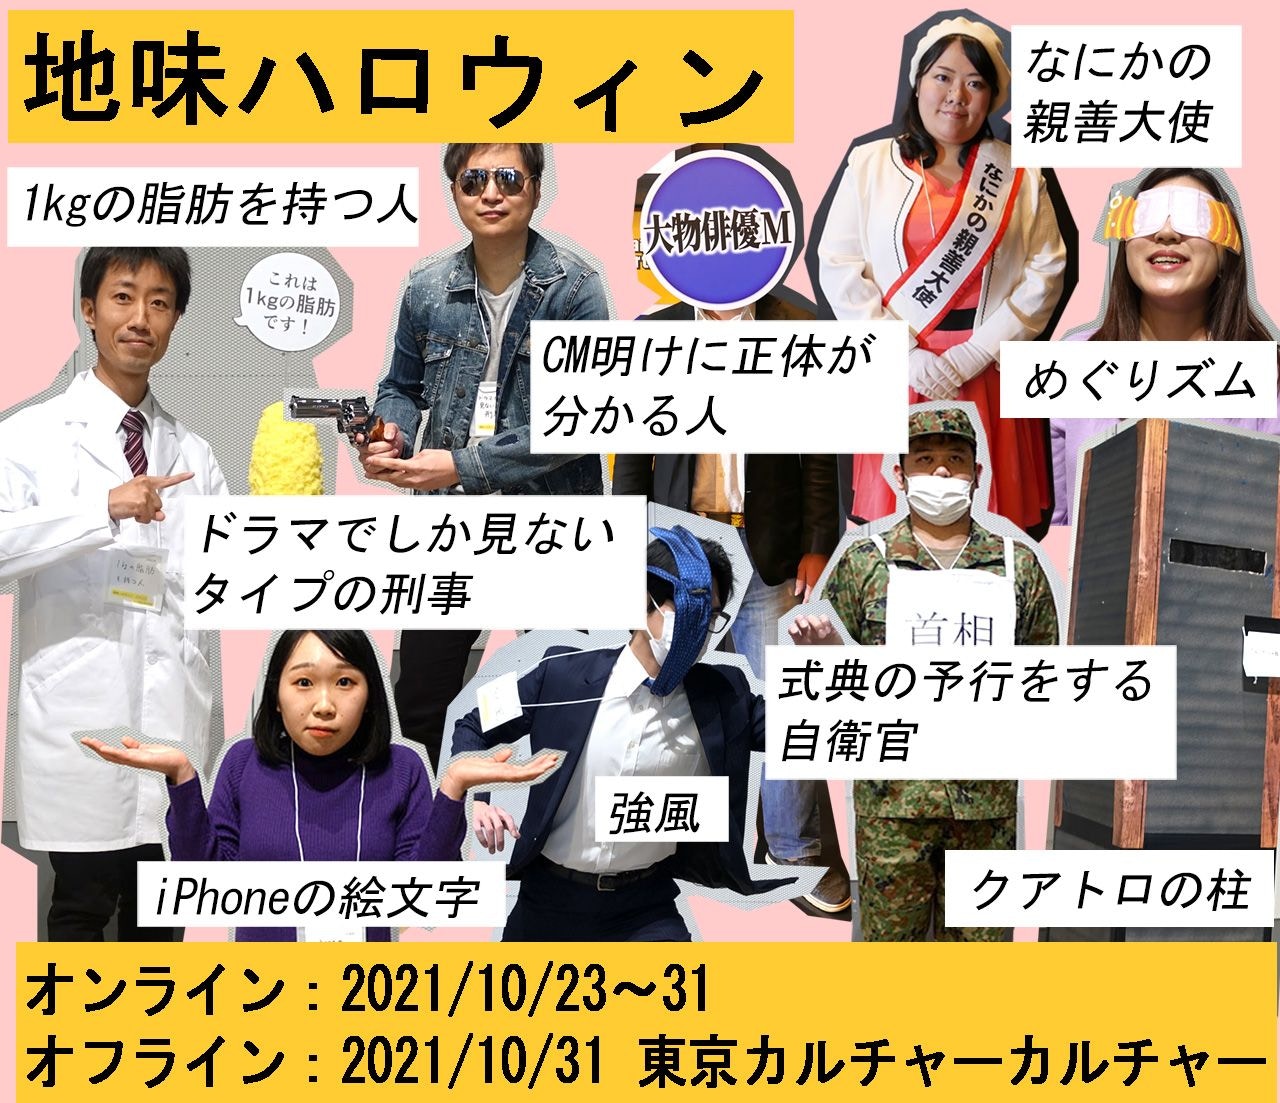 萬聖節21 日本個地味cosplay爆笑神作素人扮打疫苗有共鳴